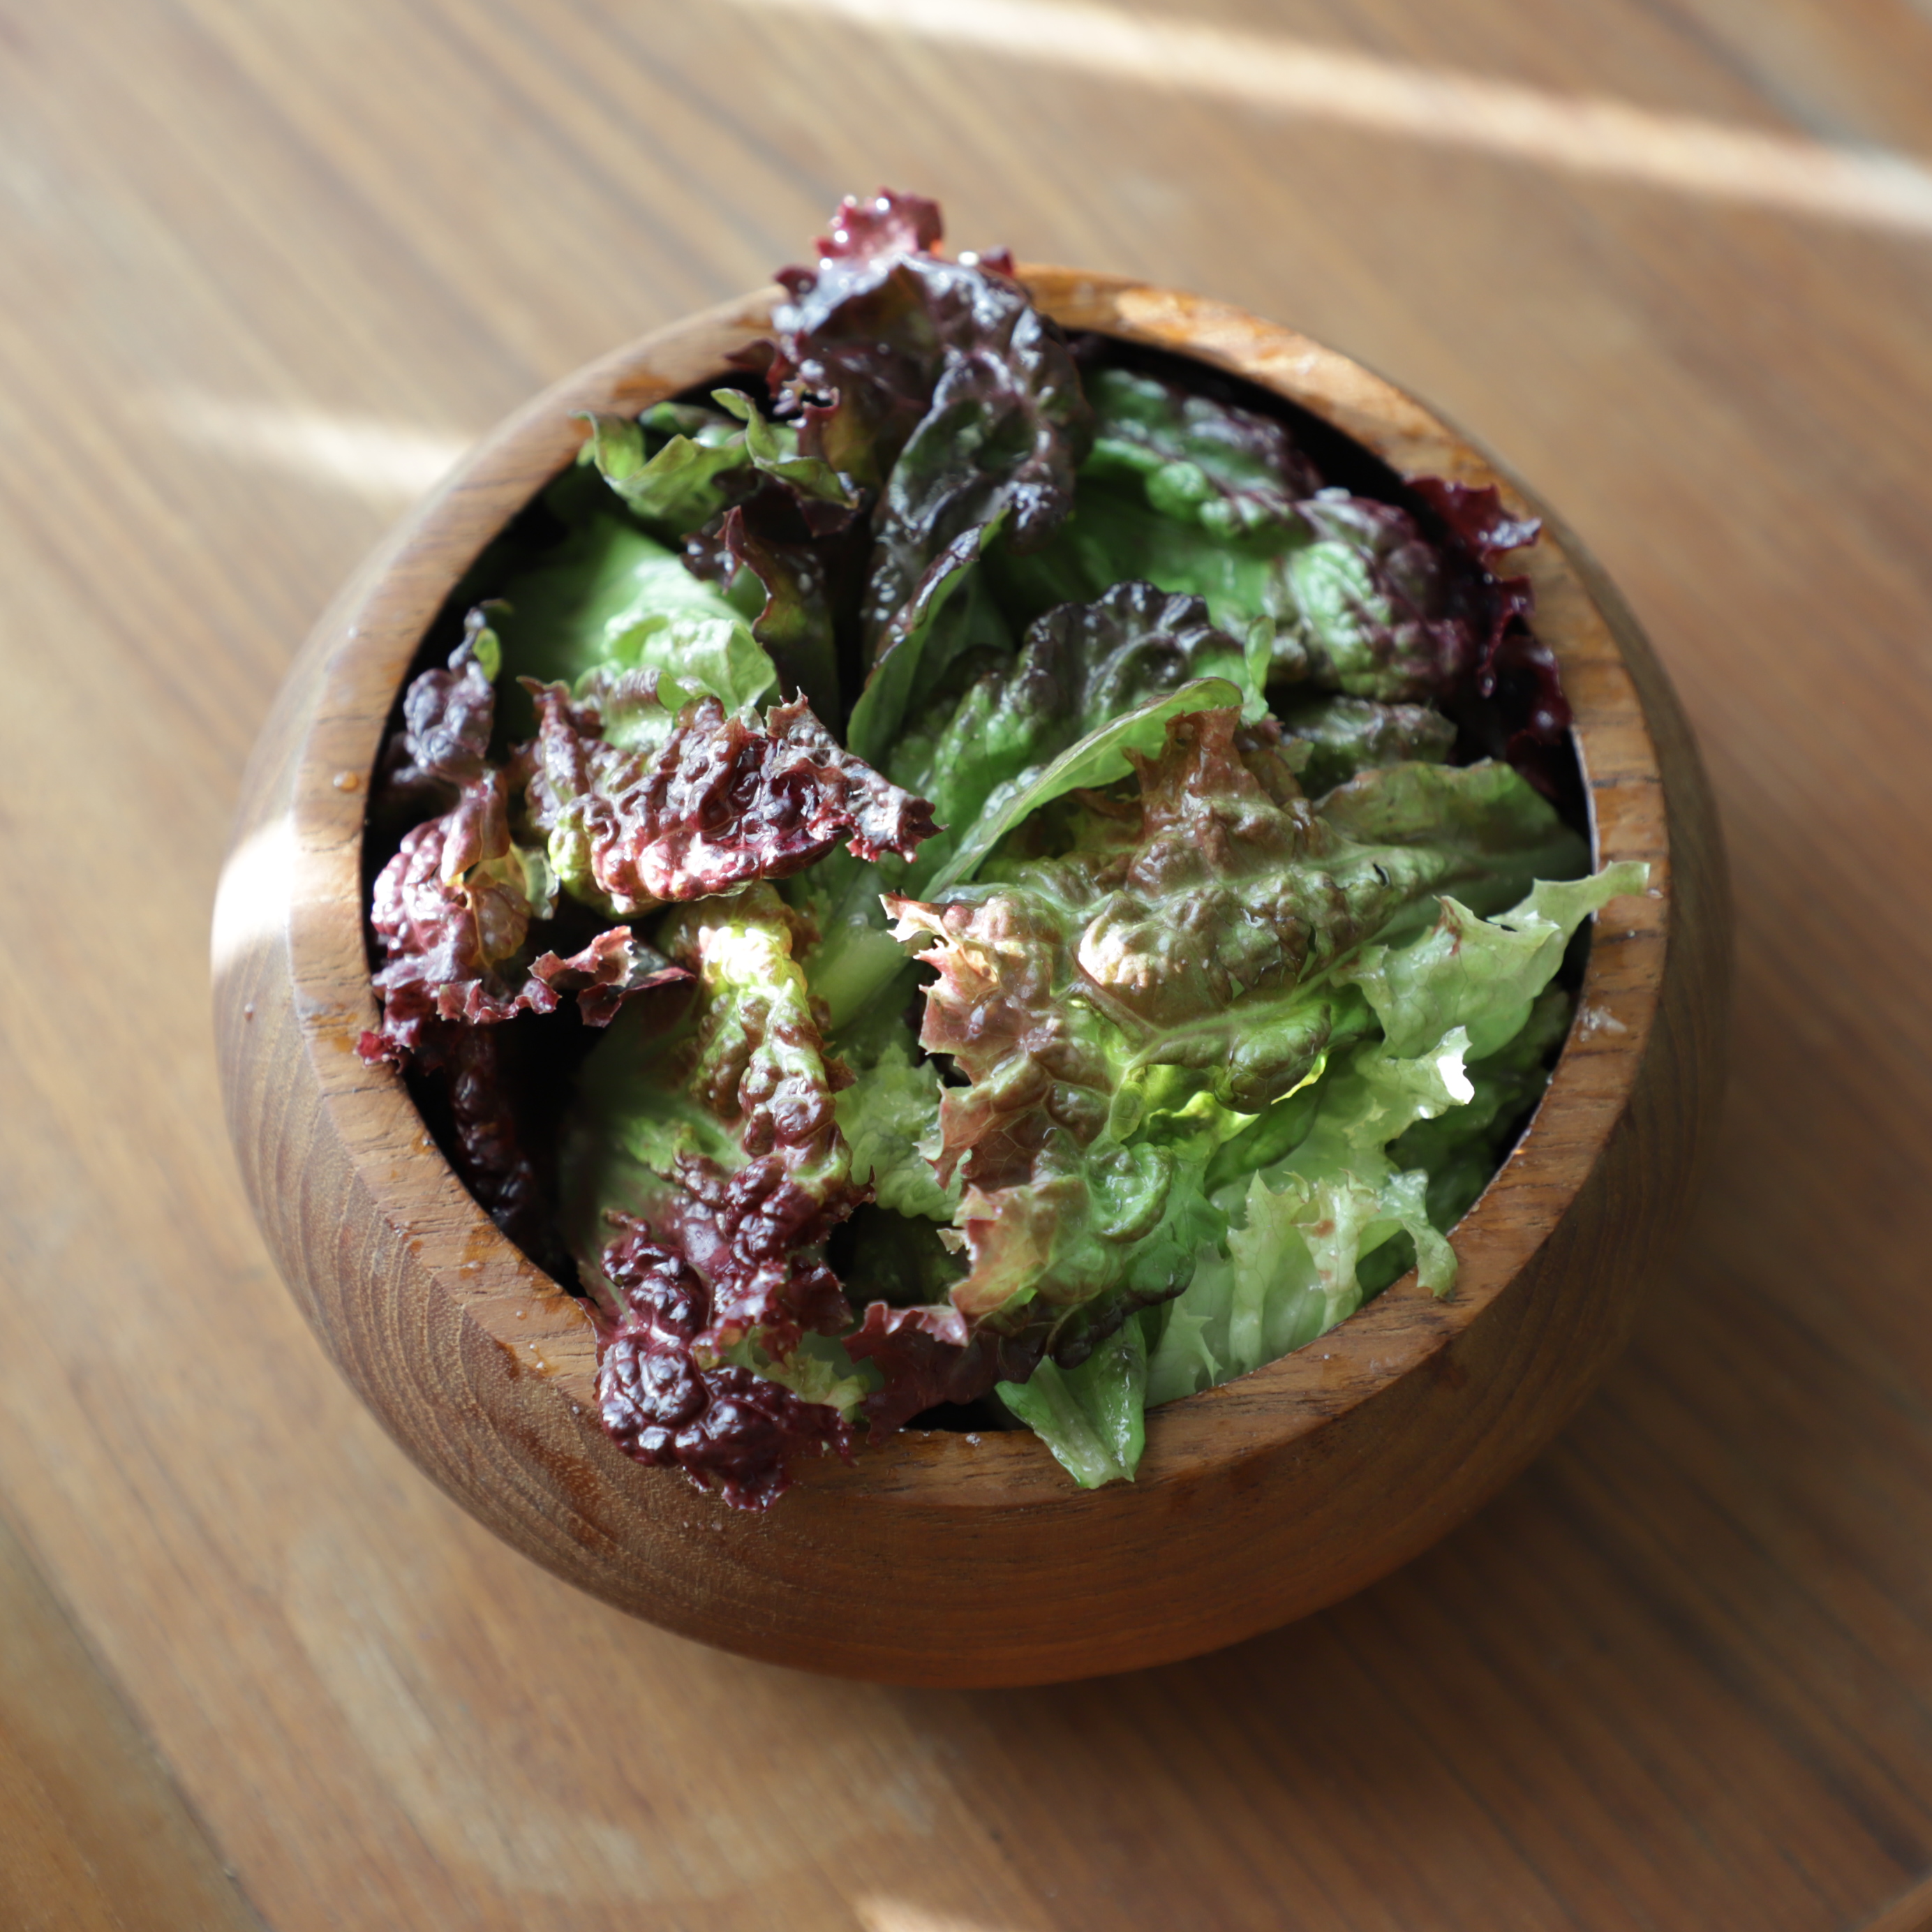 red leaf lettuce salad dressed in vinaigrette in a teak wood bowl lit by strips of light